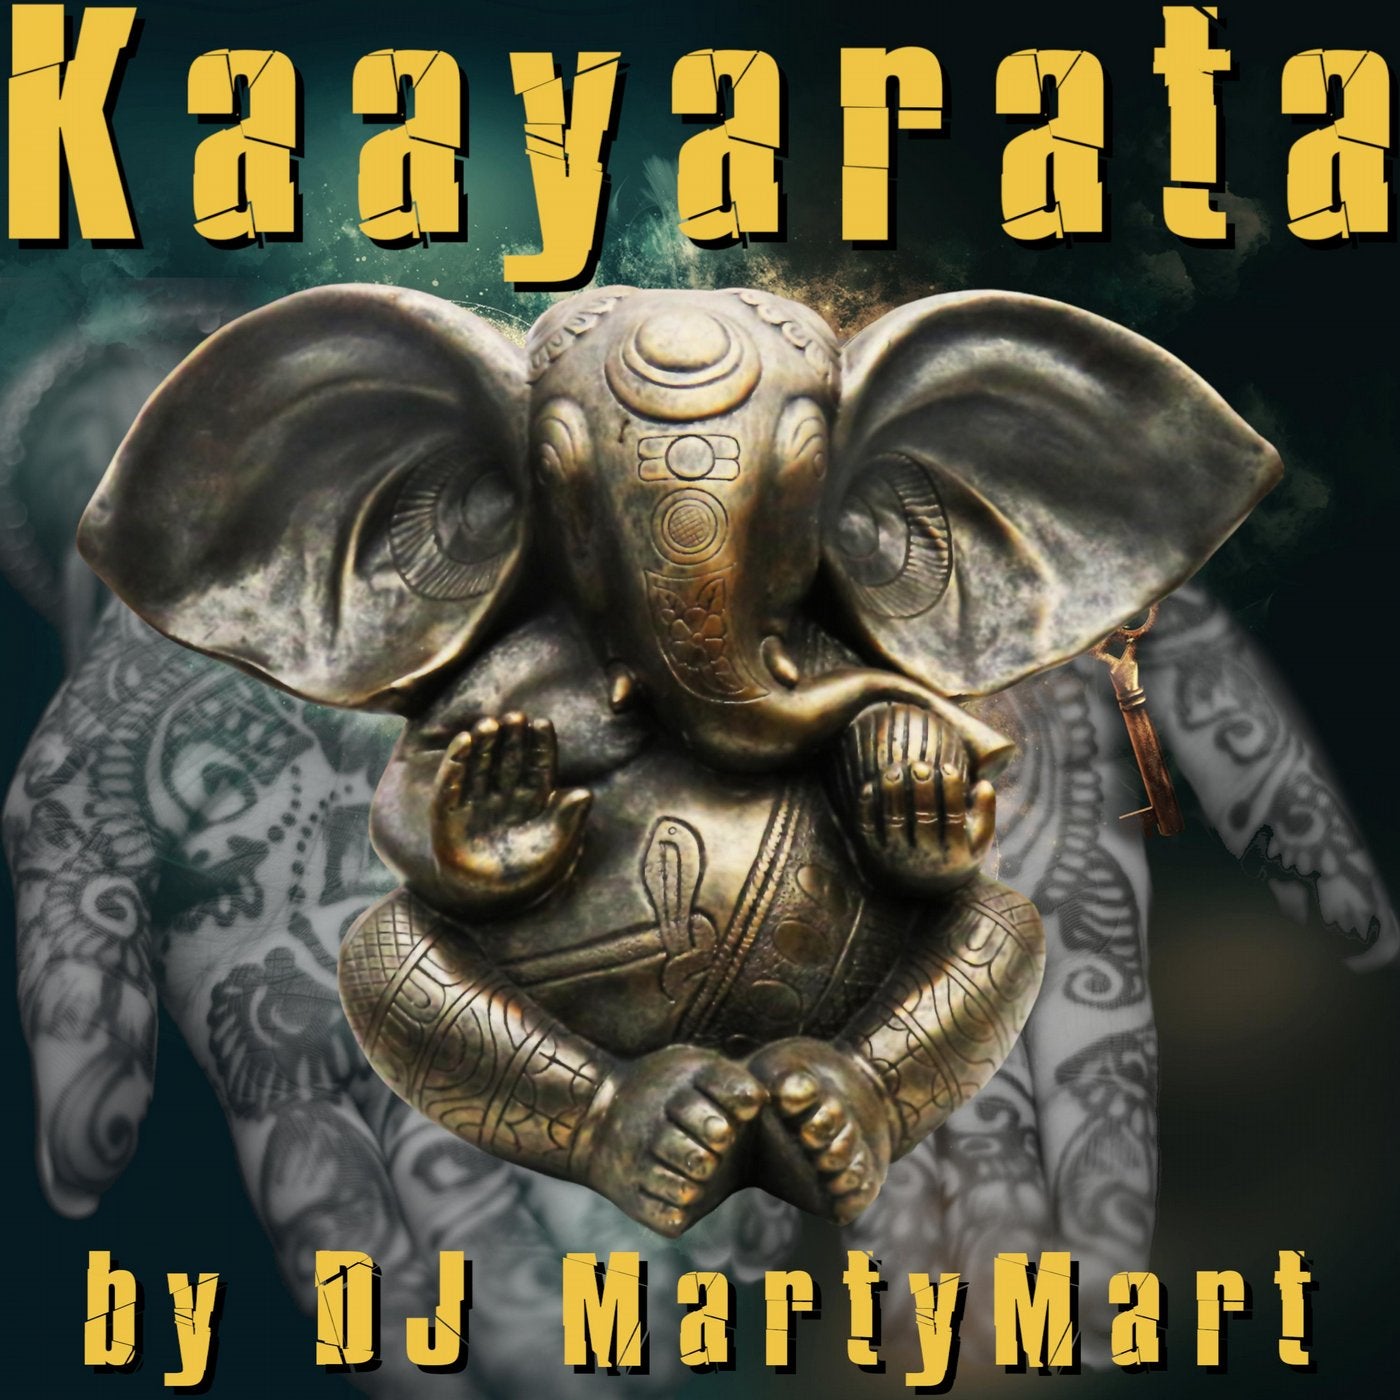 Kaayarata